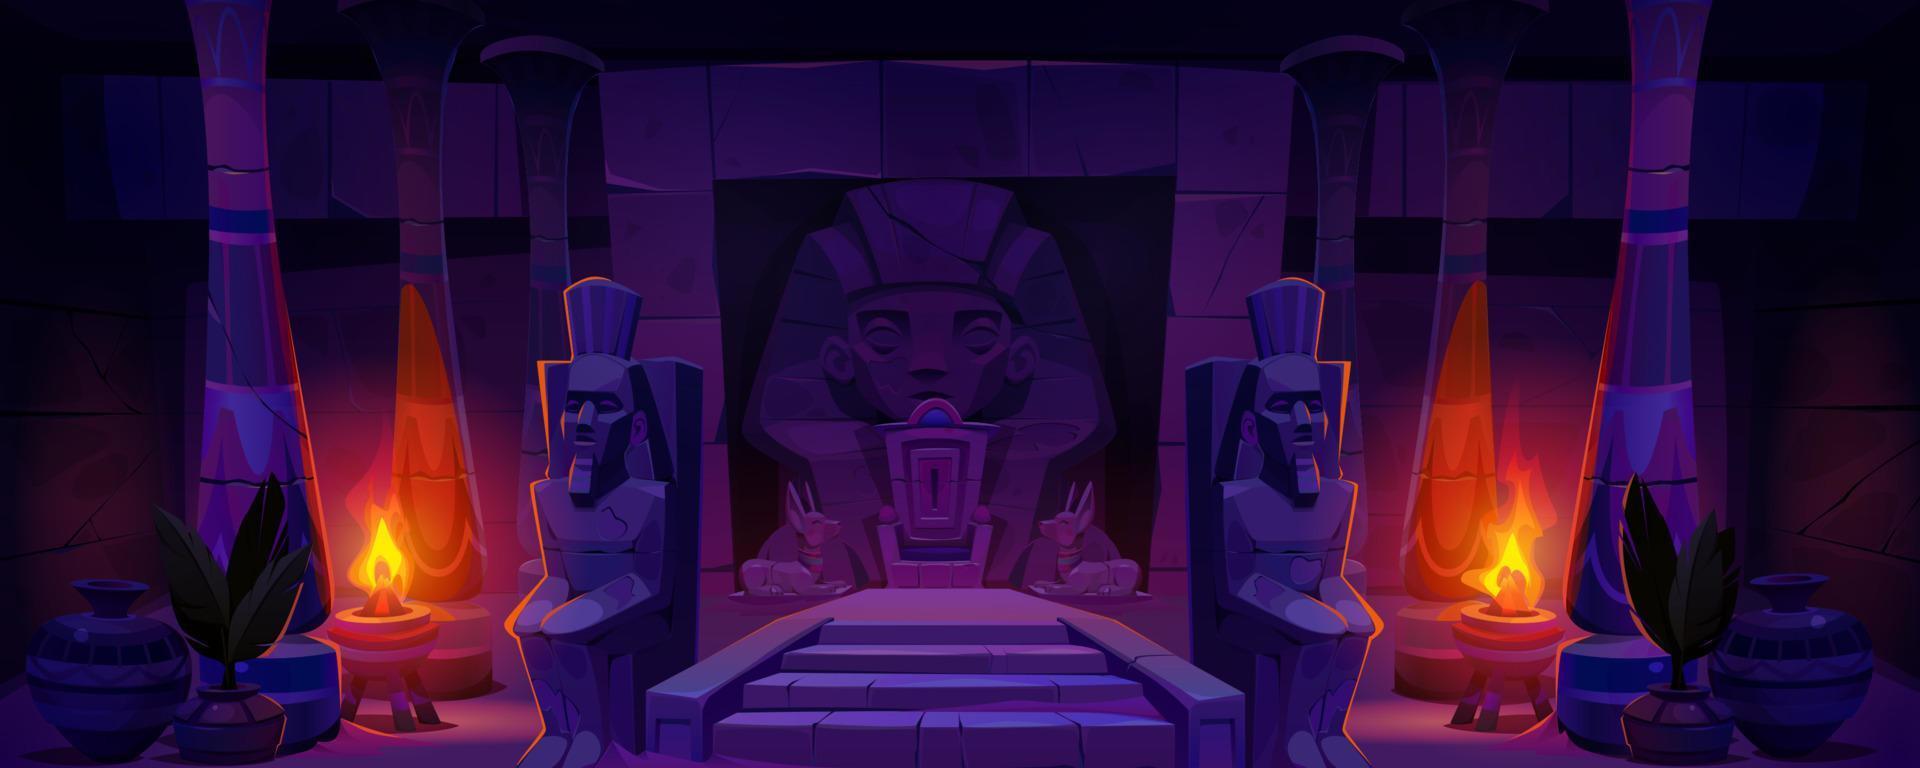 antico Egitto Faraone trono tempio cartone animato vettore